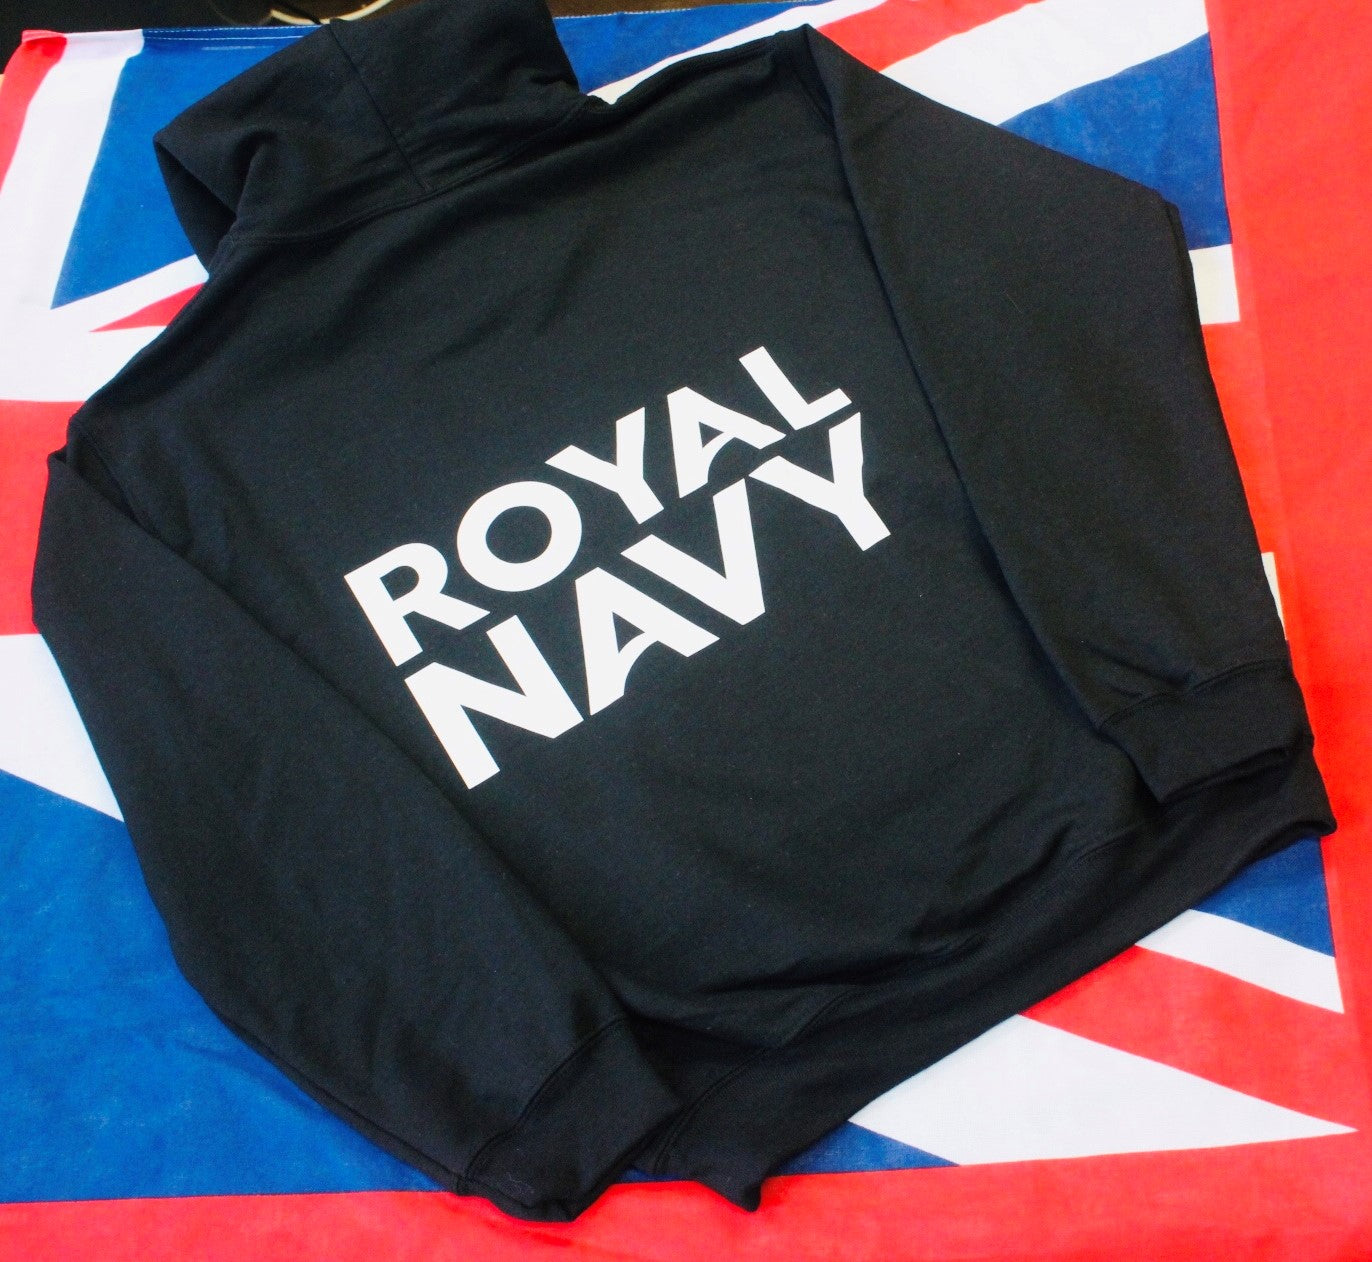 Royal Navy Hoodies